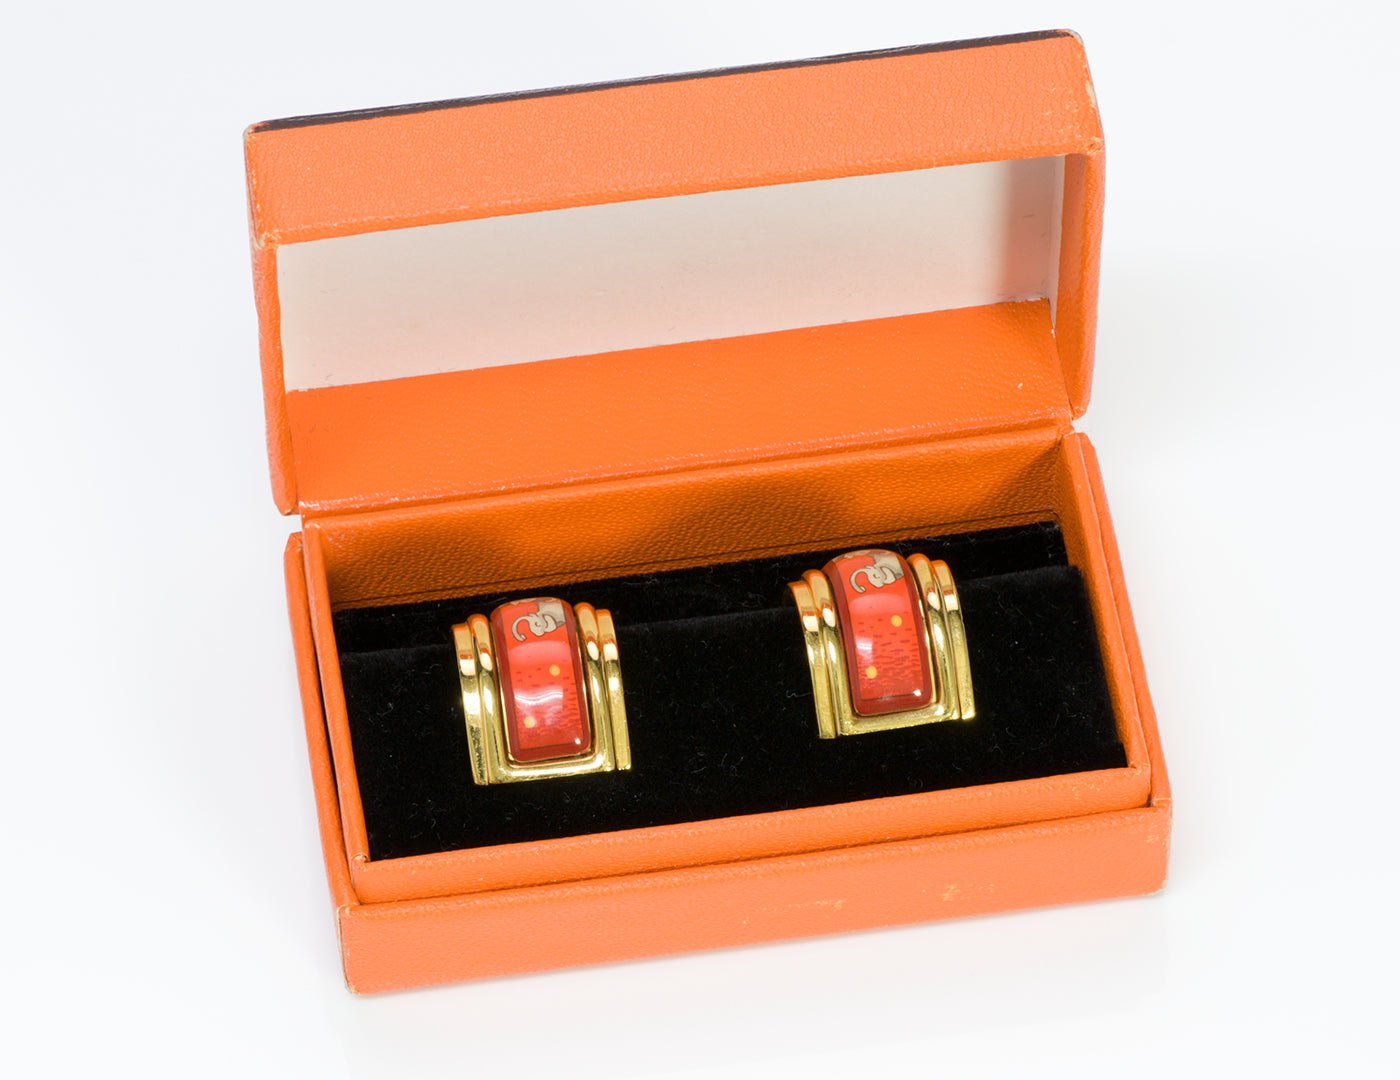 Hermes 18K Gold Plated Red Enamel Elephant Earrings